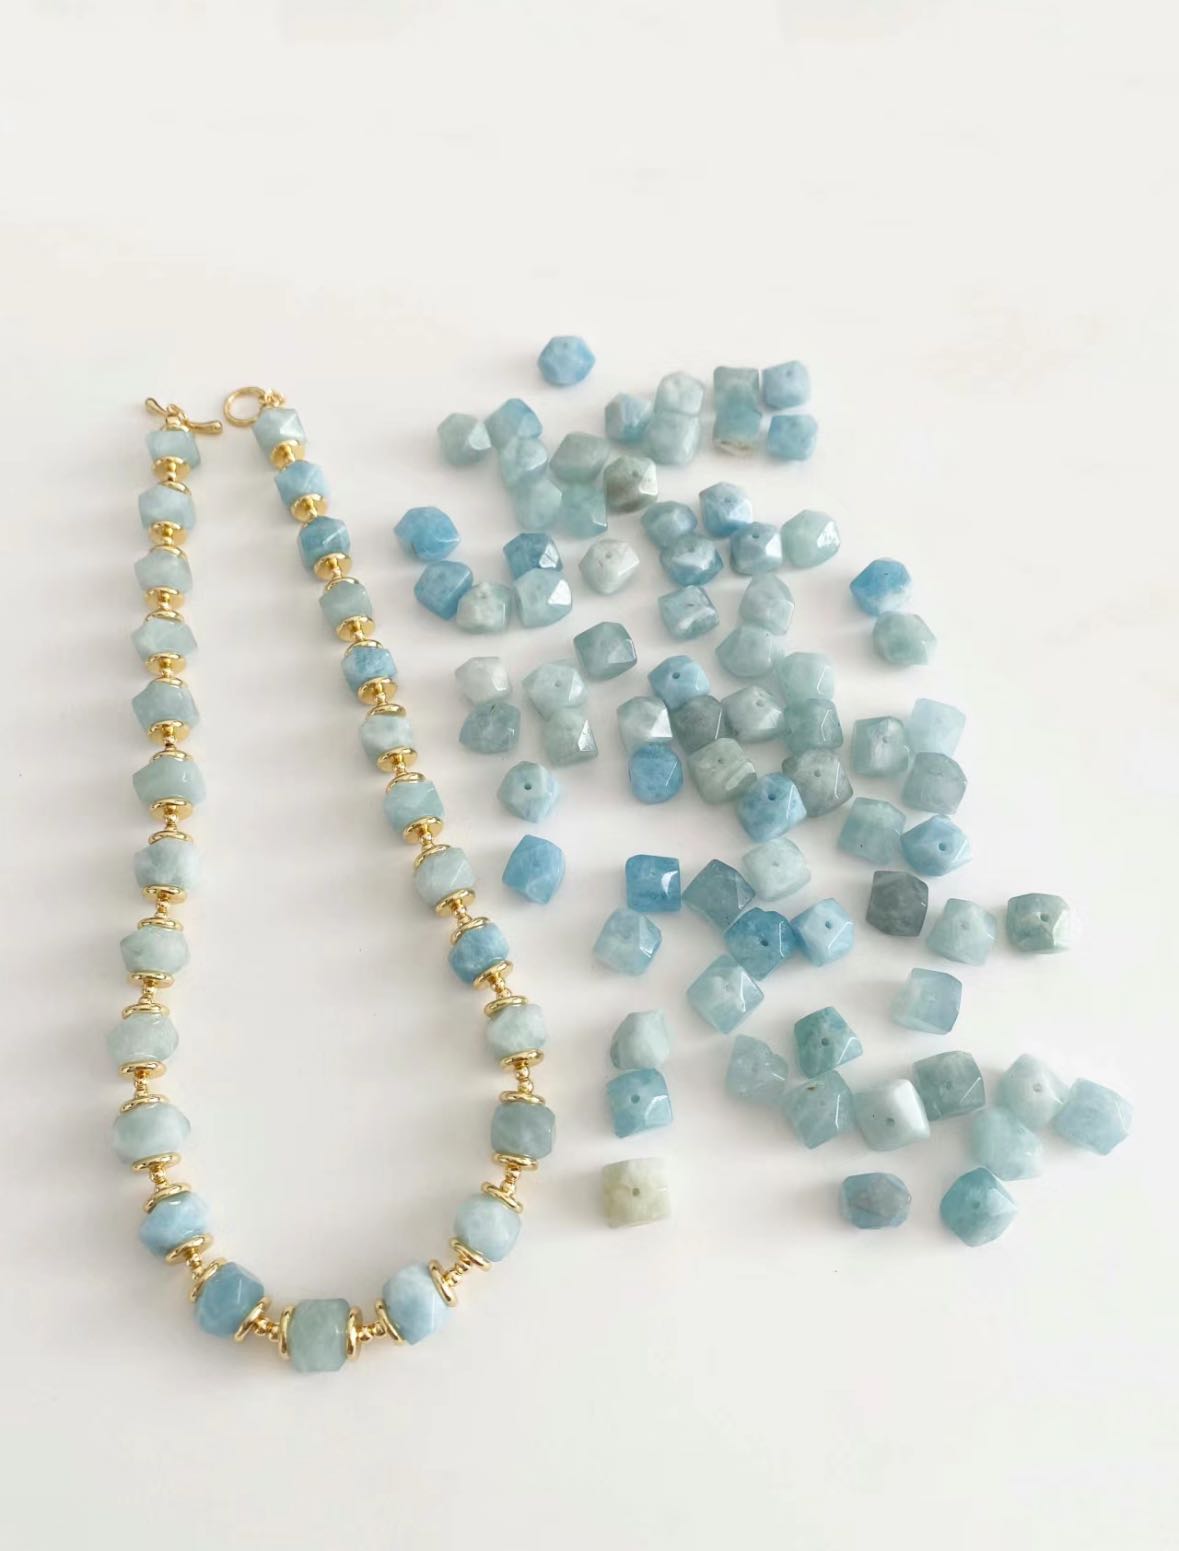 Premium Gemstone Necklace DIY